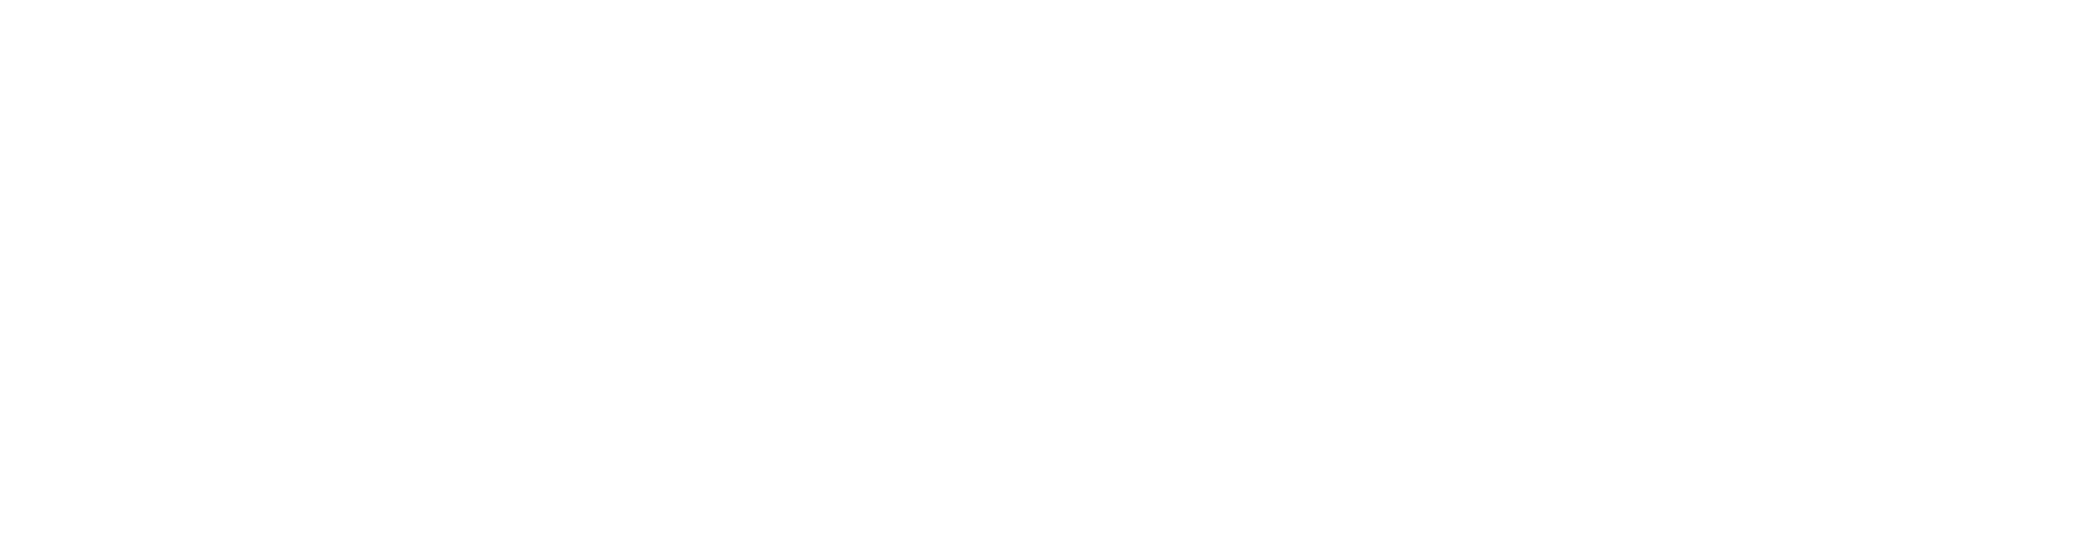 addietetyka.pl